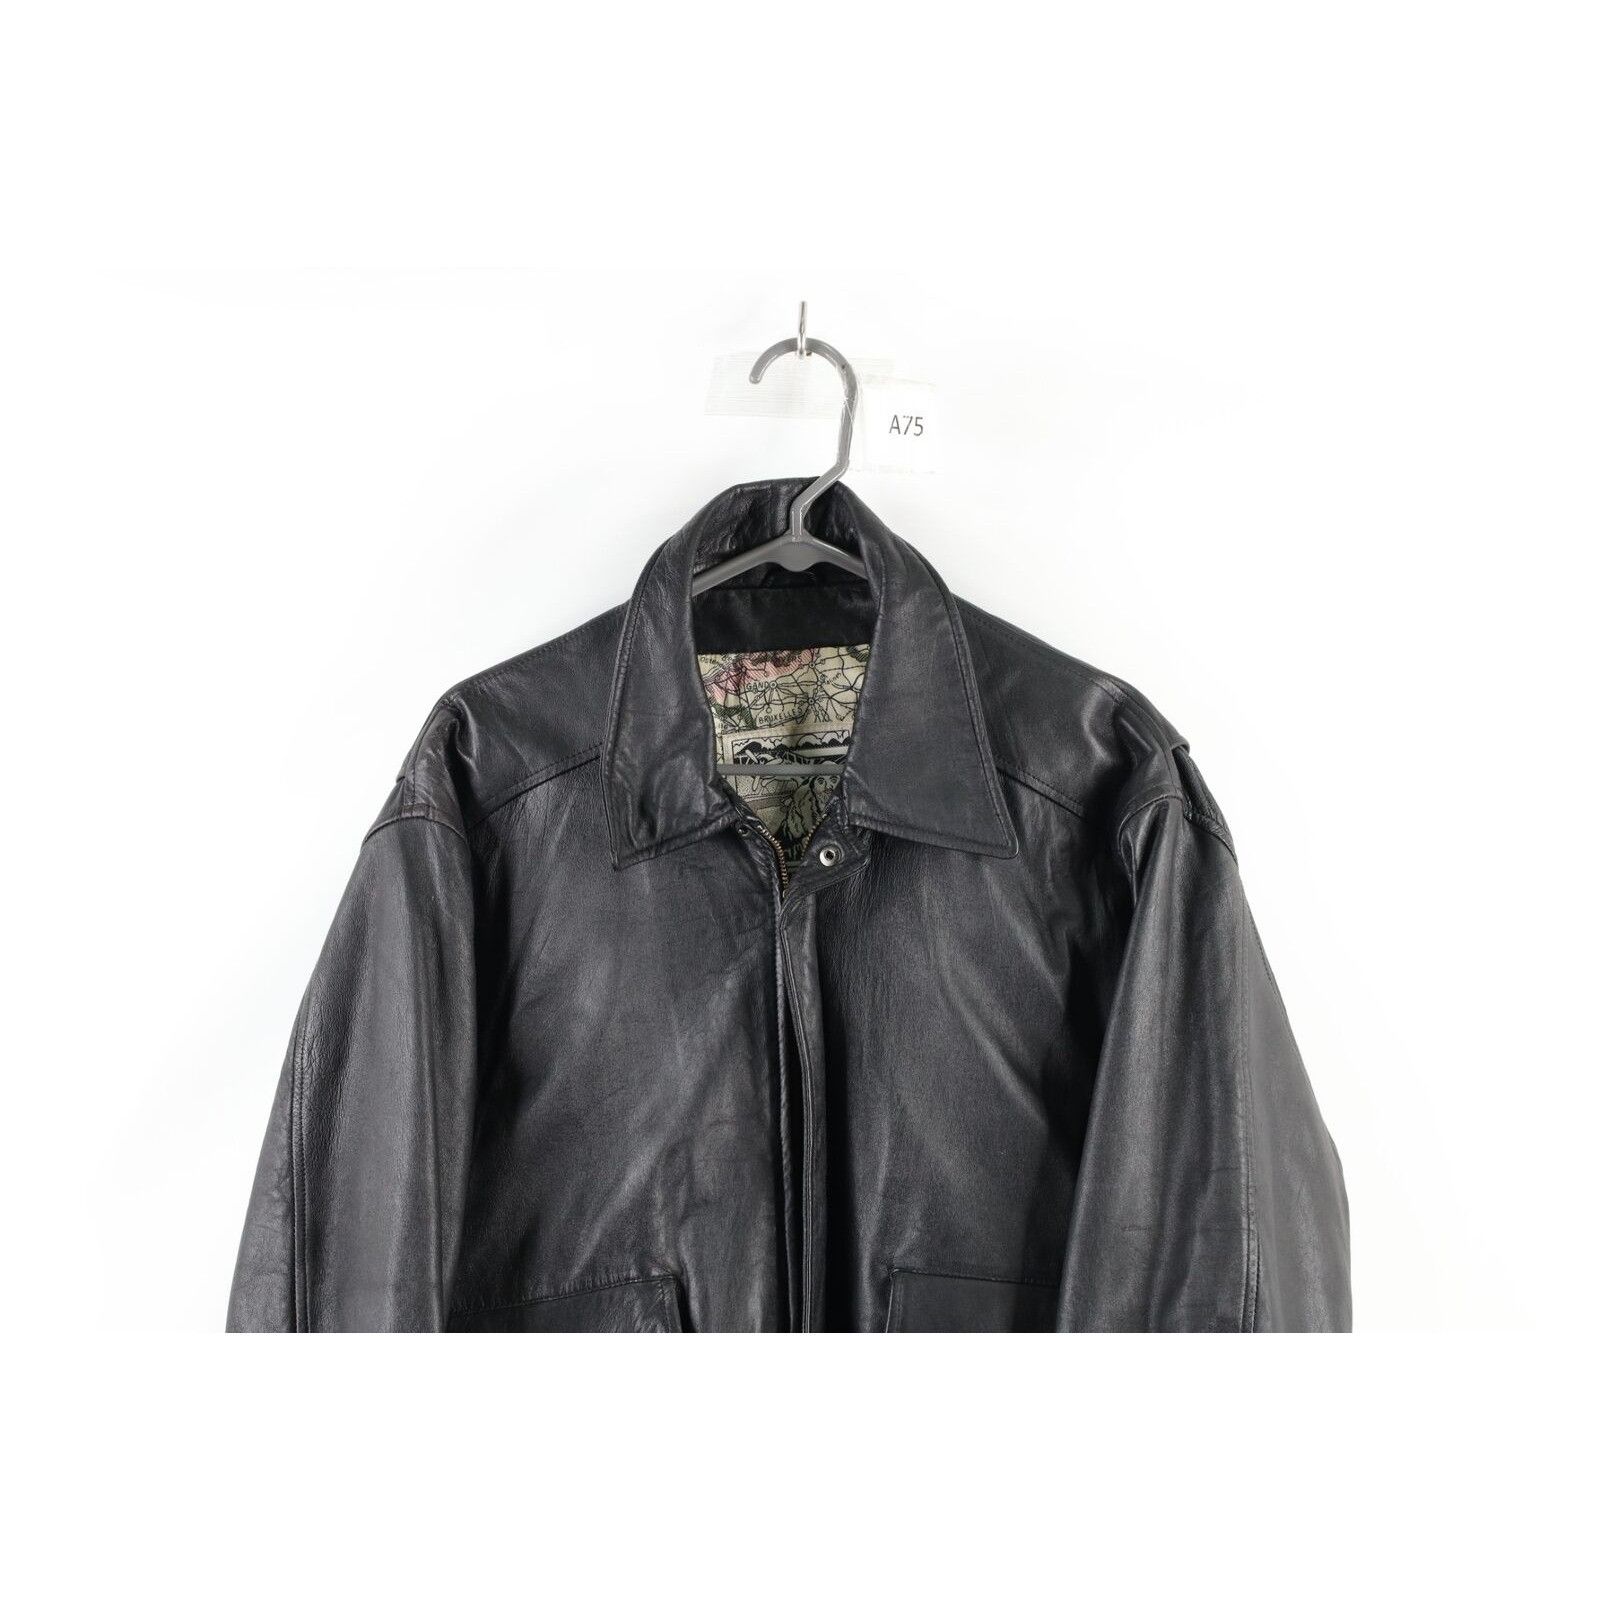 Vintage Vintage Surprise Attack Nuke Japan Souvenir Leather Jacket Size US M / EU 48-50 / 2 - 3 Thumbnail